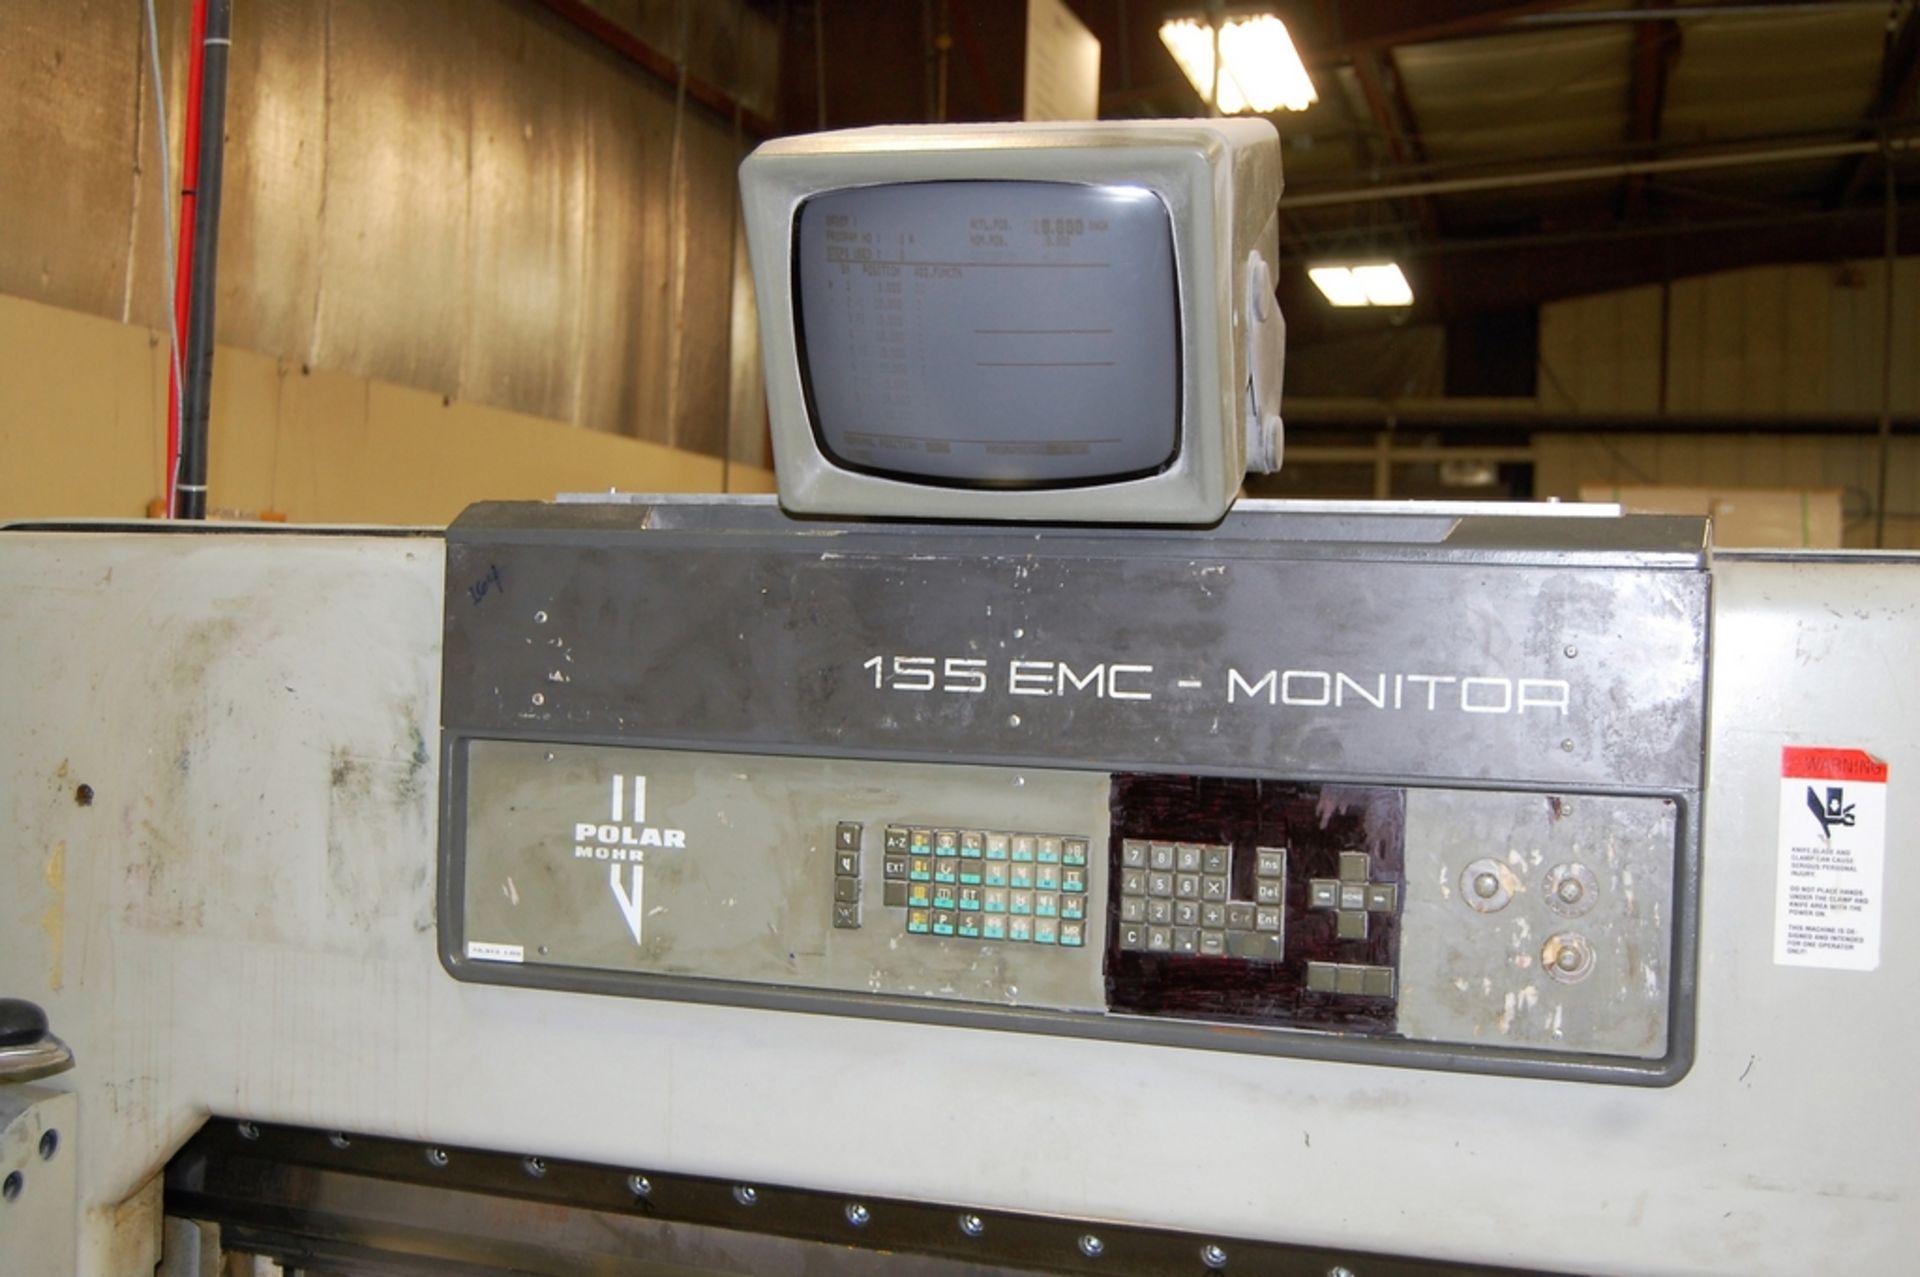 1988 Polar Mohr Model 155 EMC-MON 61" Paper Cutting Machine - Image 4 of 7